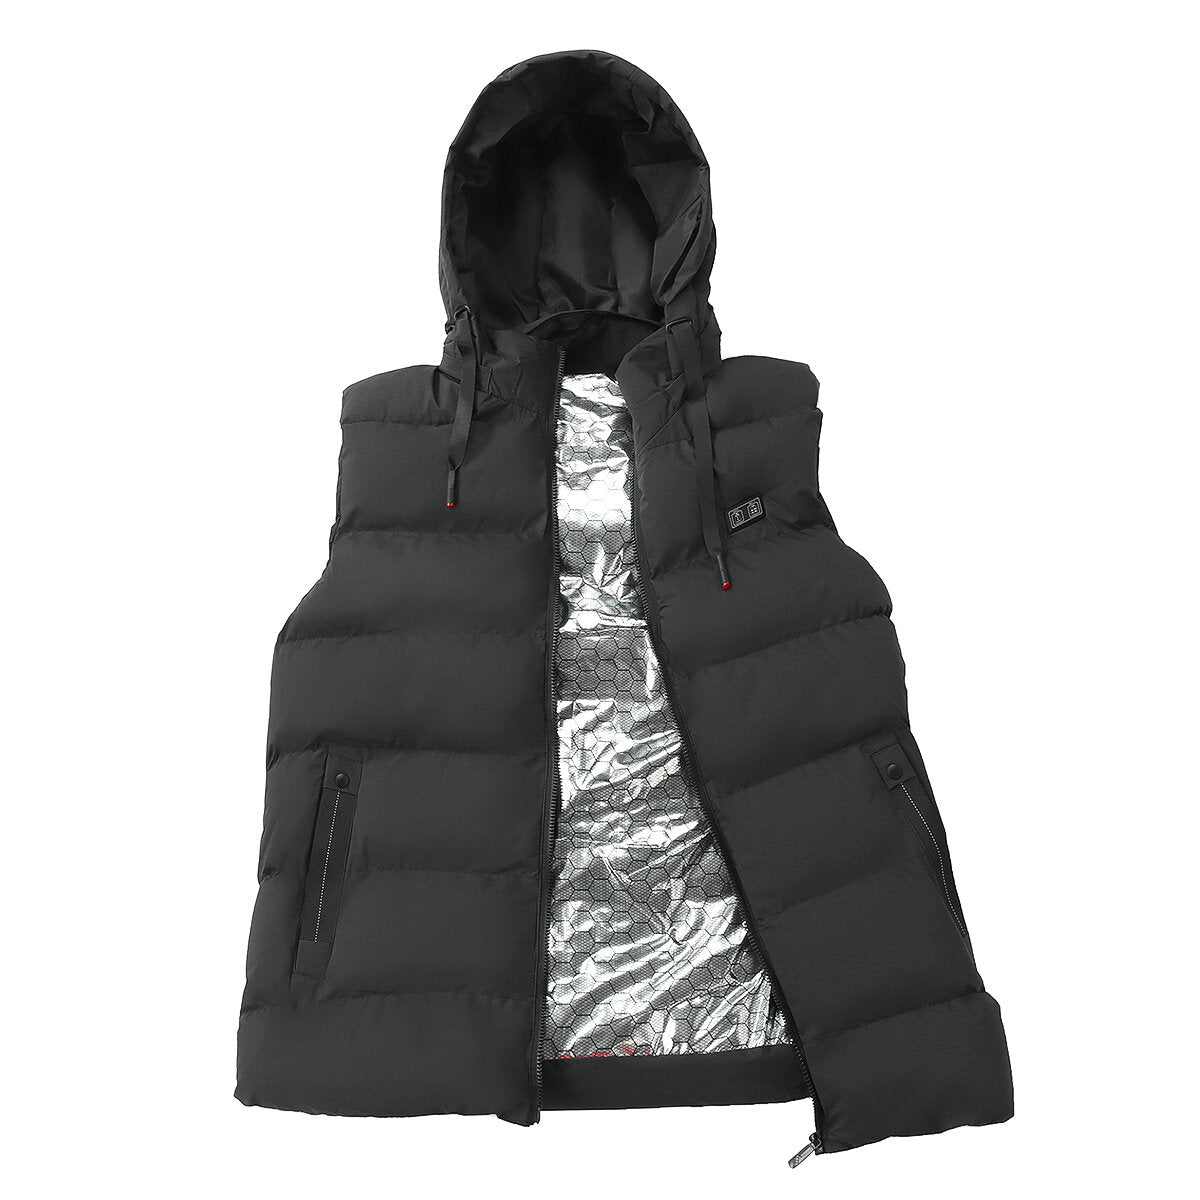 11 Heating Zones Vest Warm Winter Men Women Electric USB Jacket Heated Thermal Coat